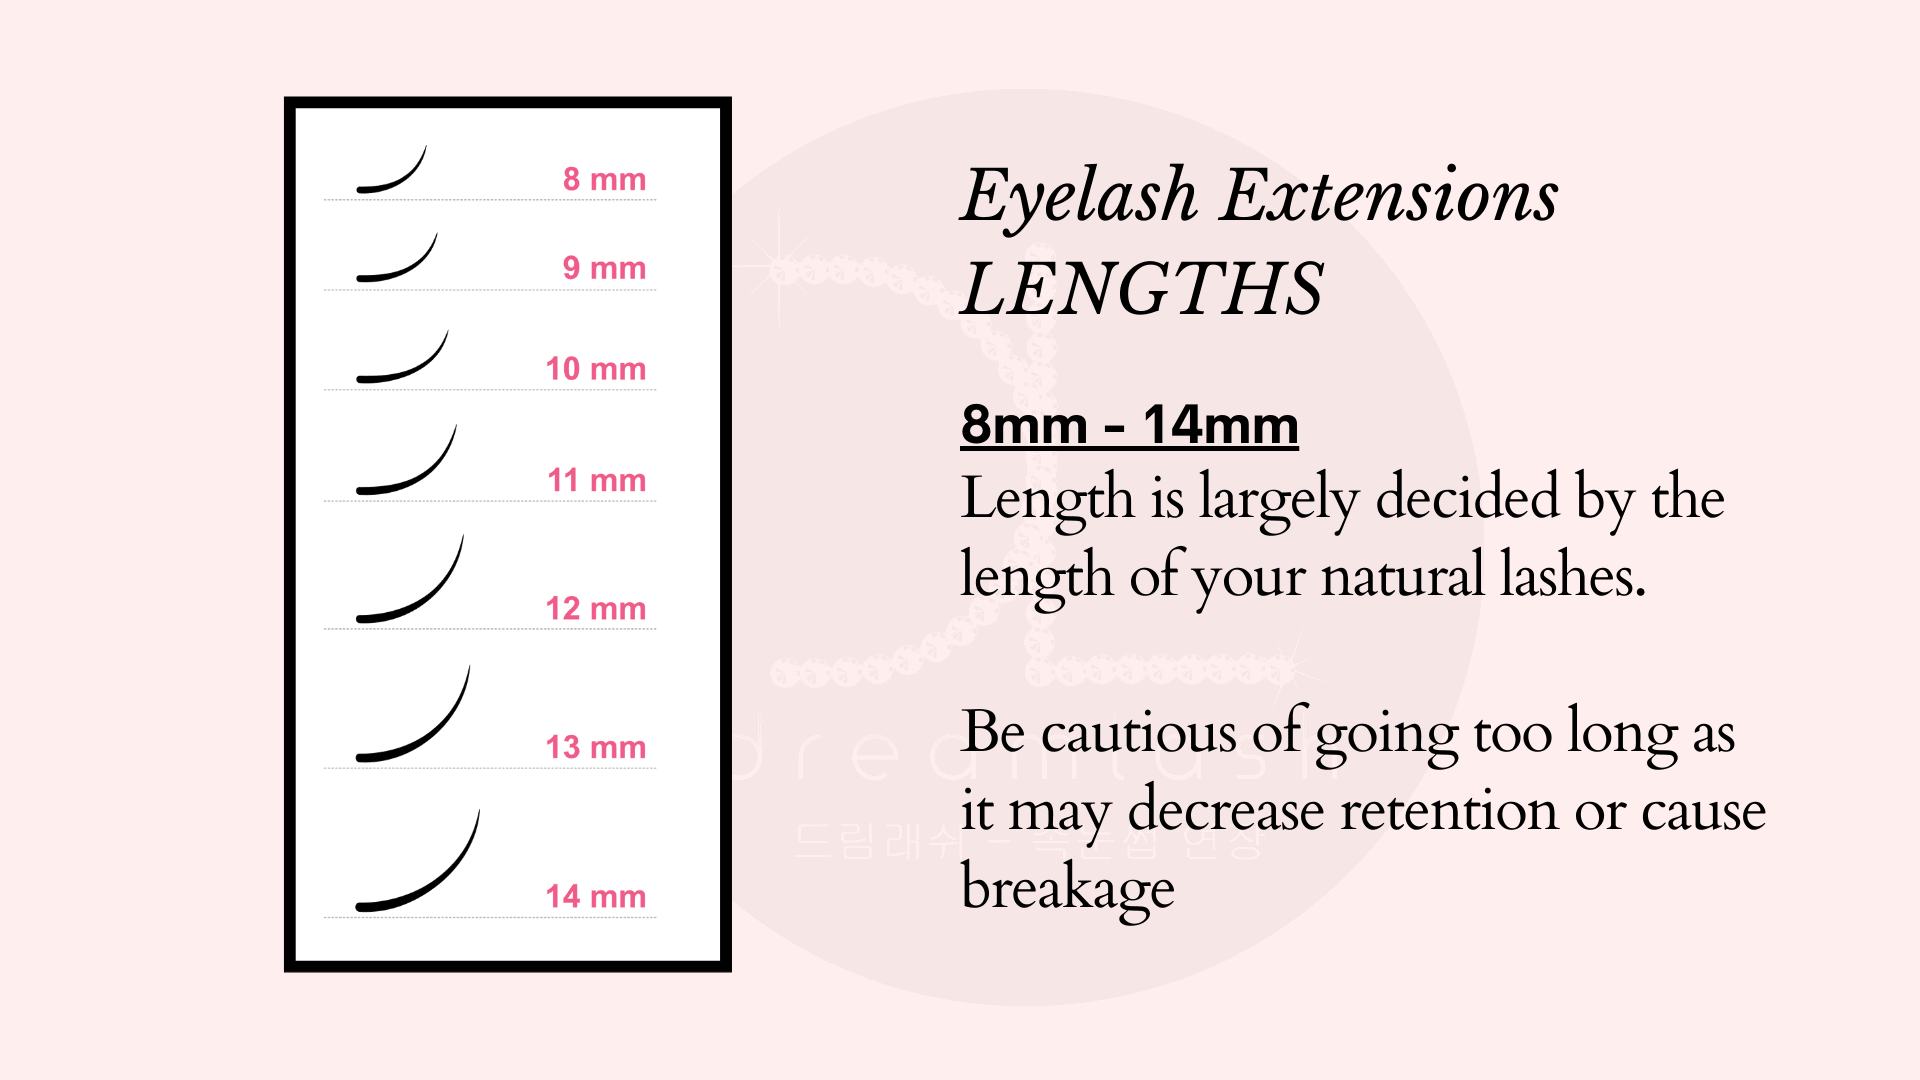 eyelash extension lengths